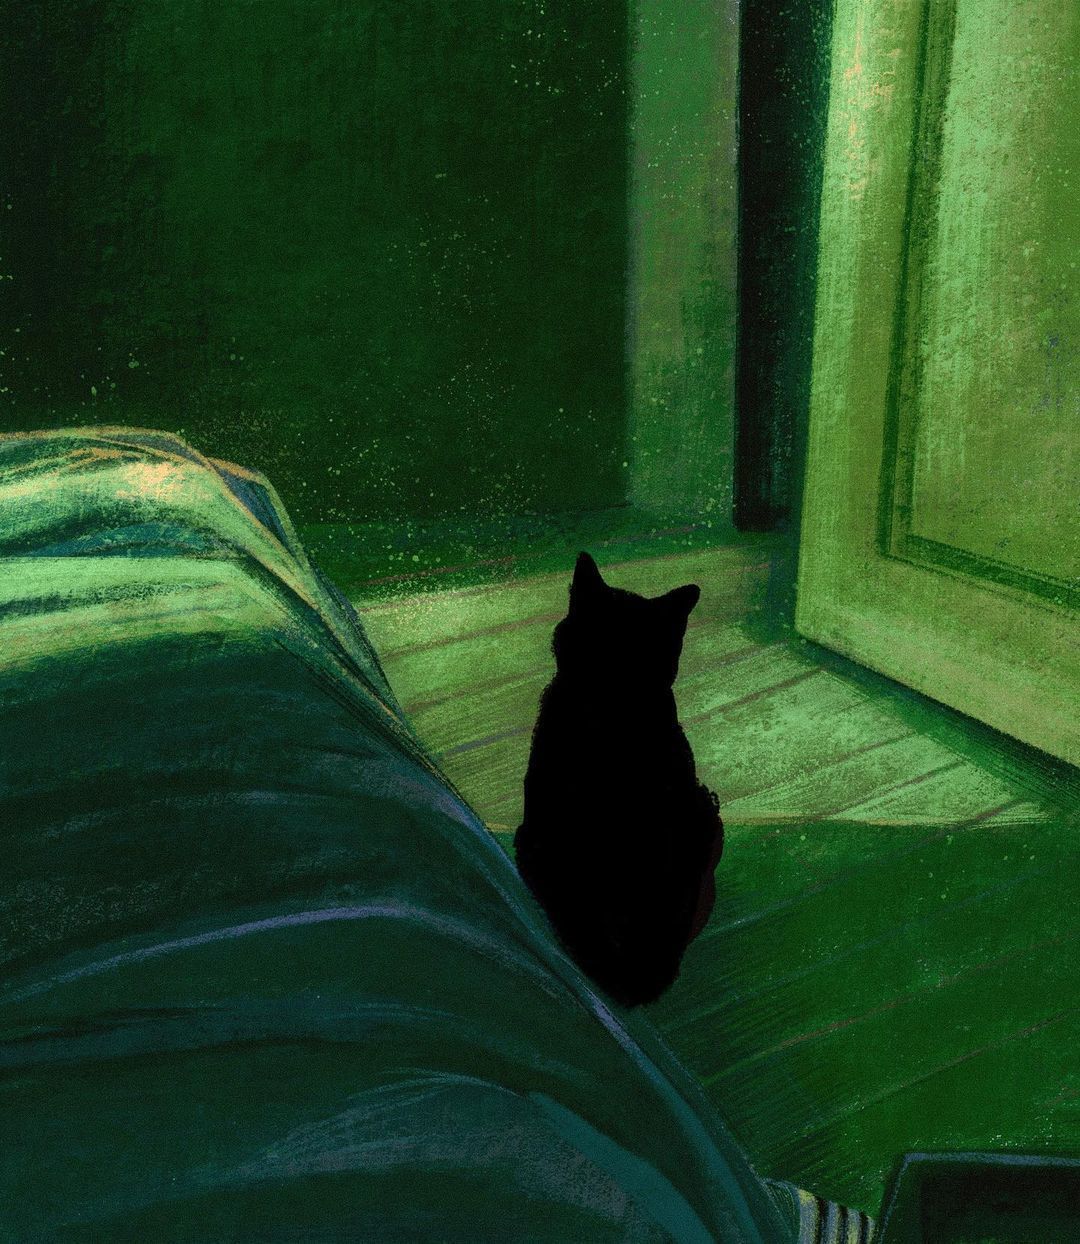 Животные Просто черный кот в зеленой комнате, прикольно получилось.